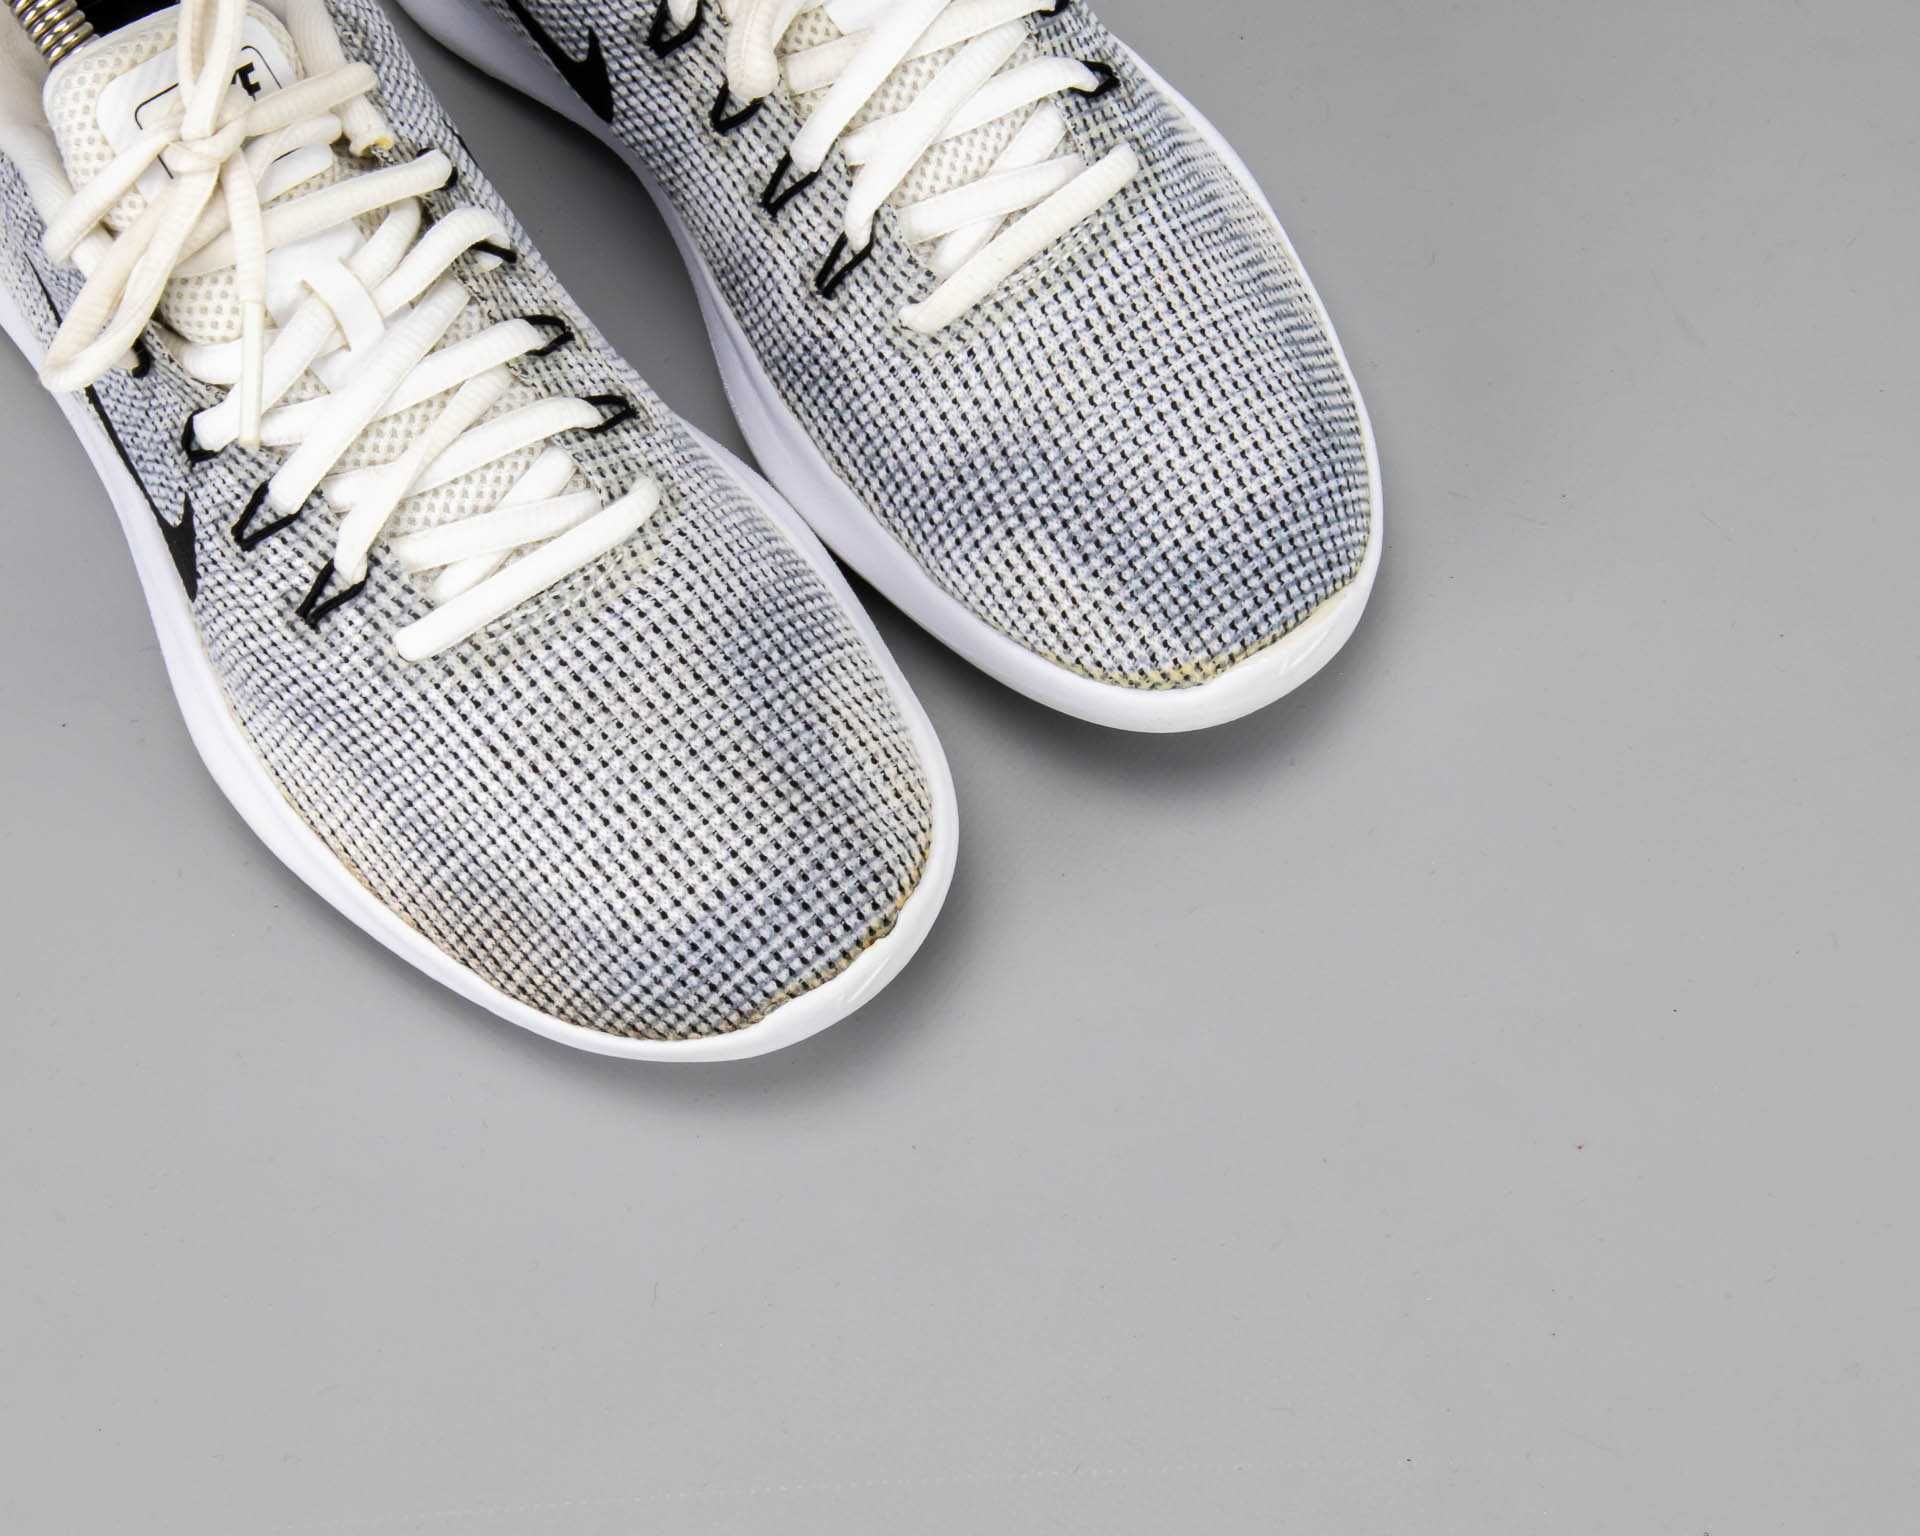 Легкие беговые кроссовки в сетку Nike Flex RN 2018.38 размер